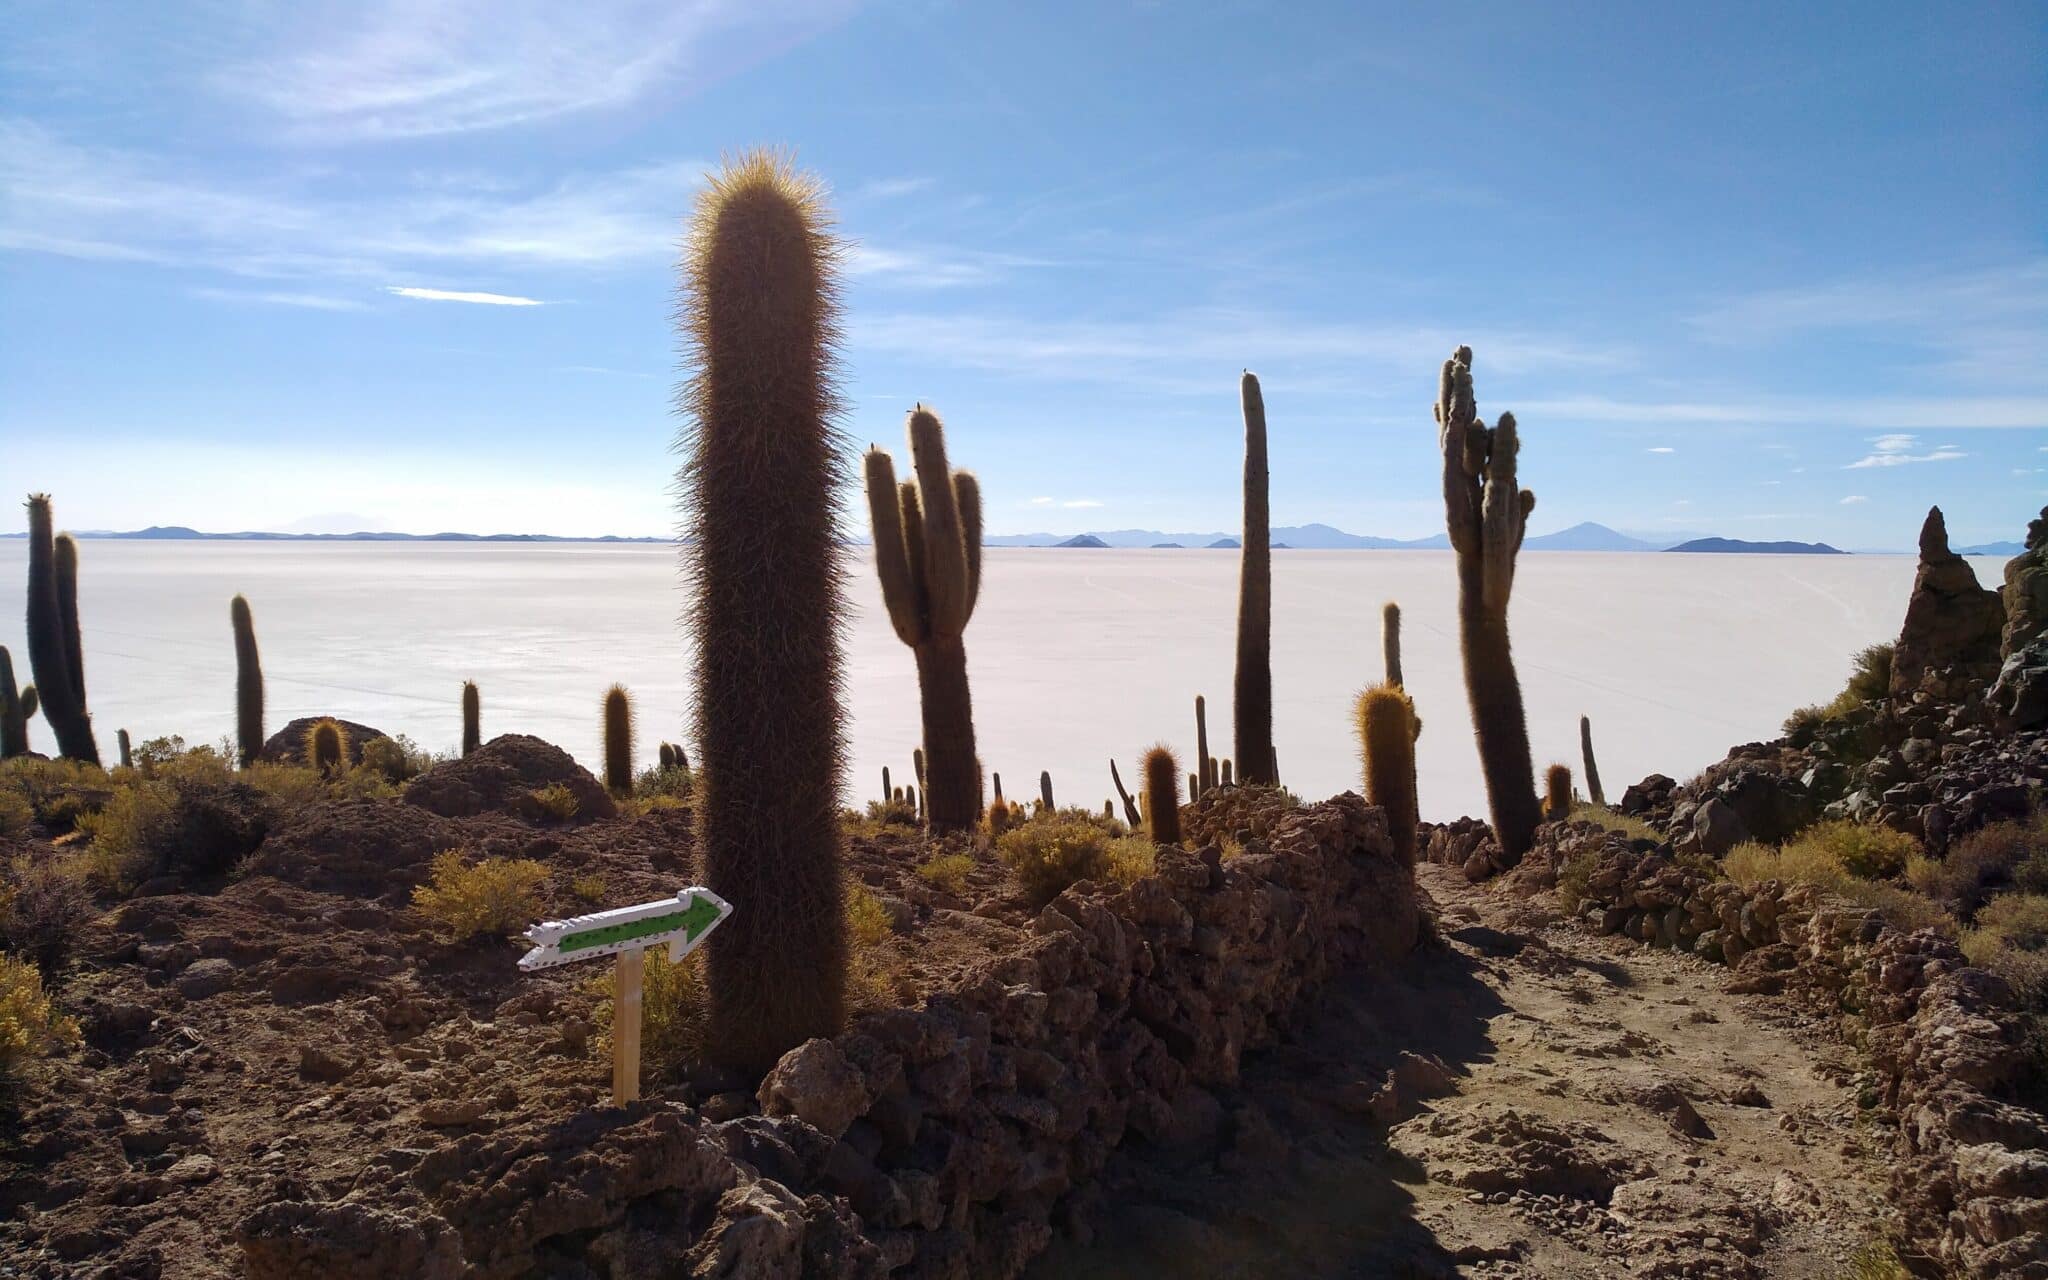 Cactus, A Través De Los Cuales Pasa Un Sendero, Al Fondo La Extensión Del Desierto Salado Y Montañas En El Horizonte.